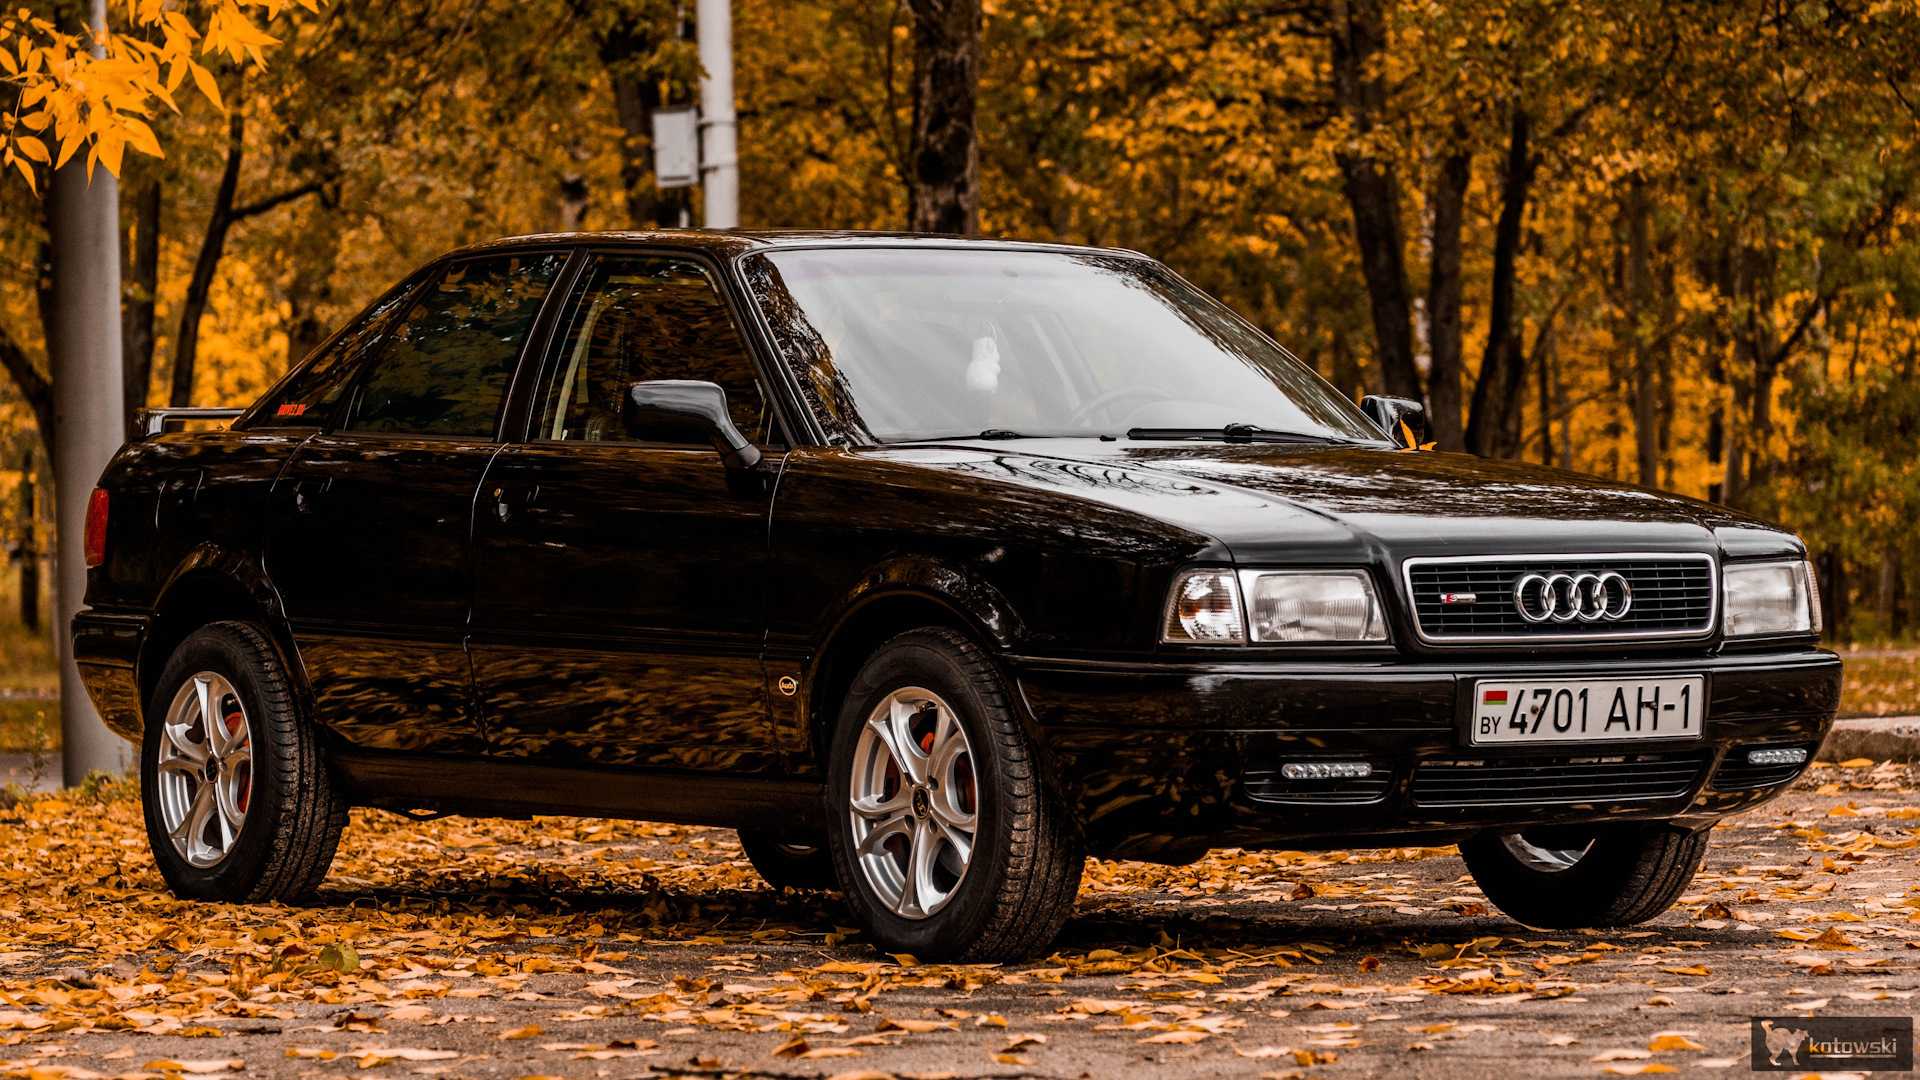 Купить ауди б4 в белоруссии. Ауди 80 b4. Audi 80 b4 4.2. Ауди 80 б4. Audi 80 b4 1996.